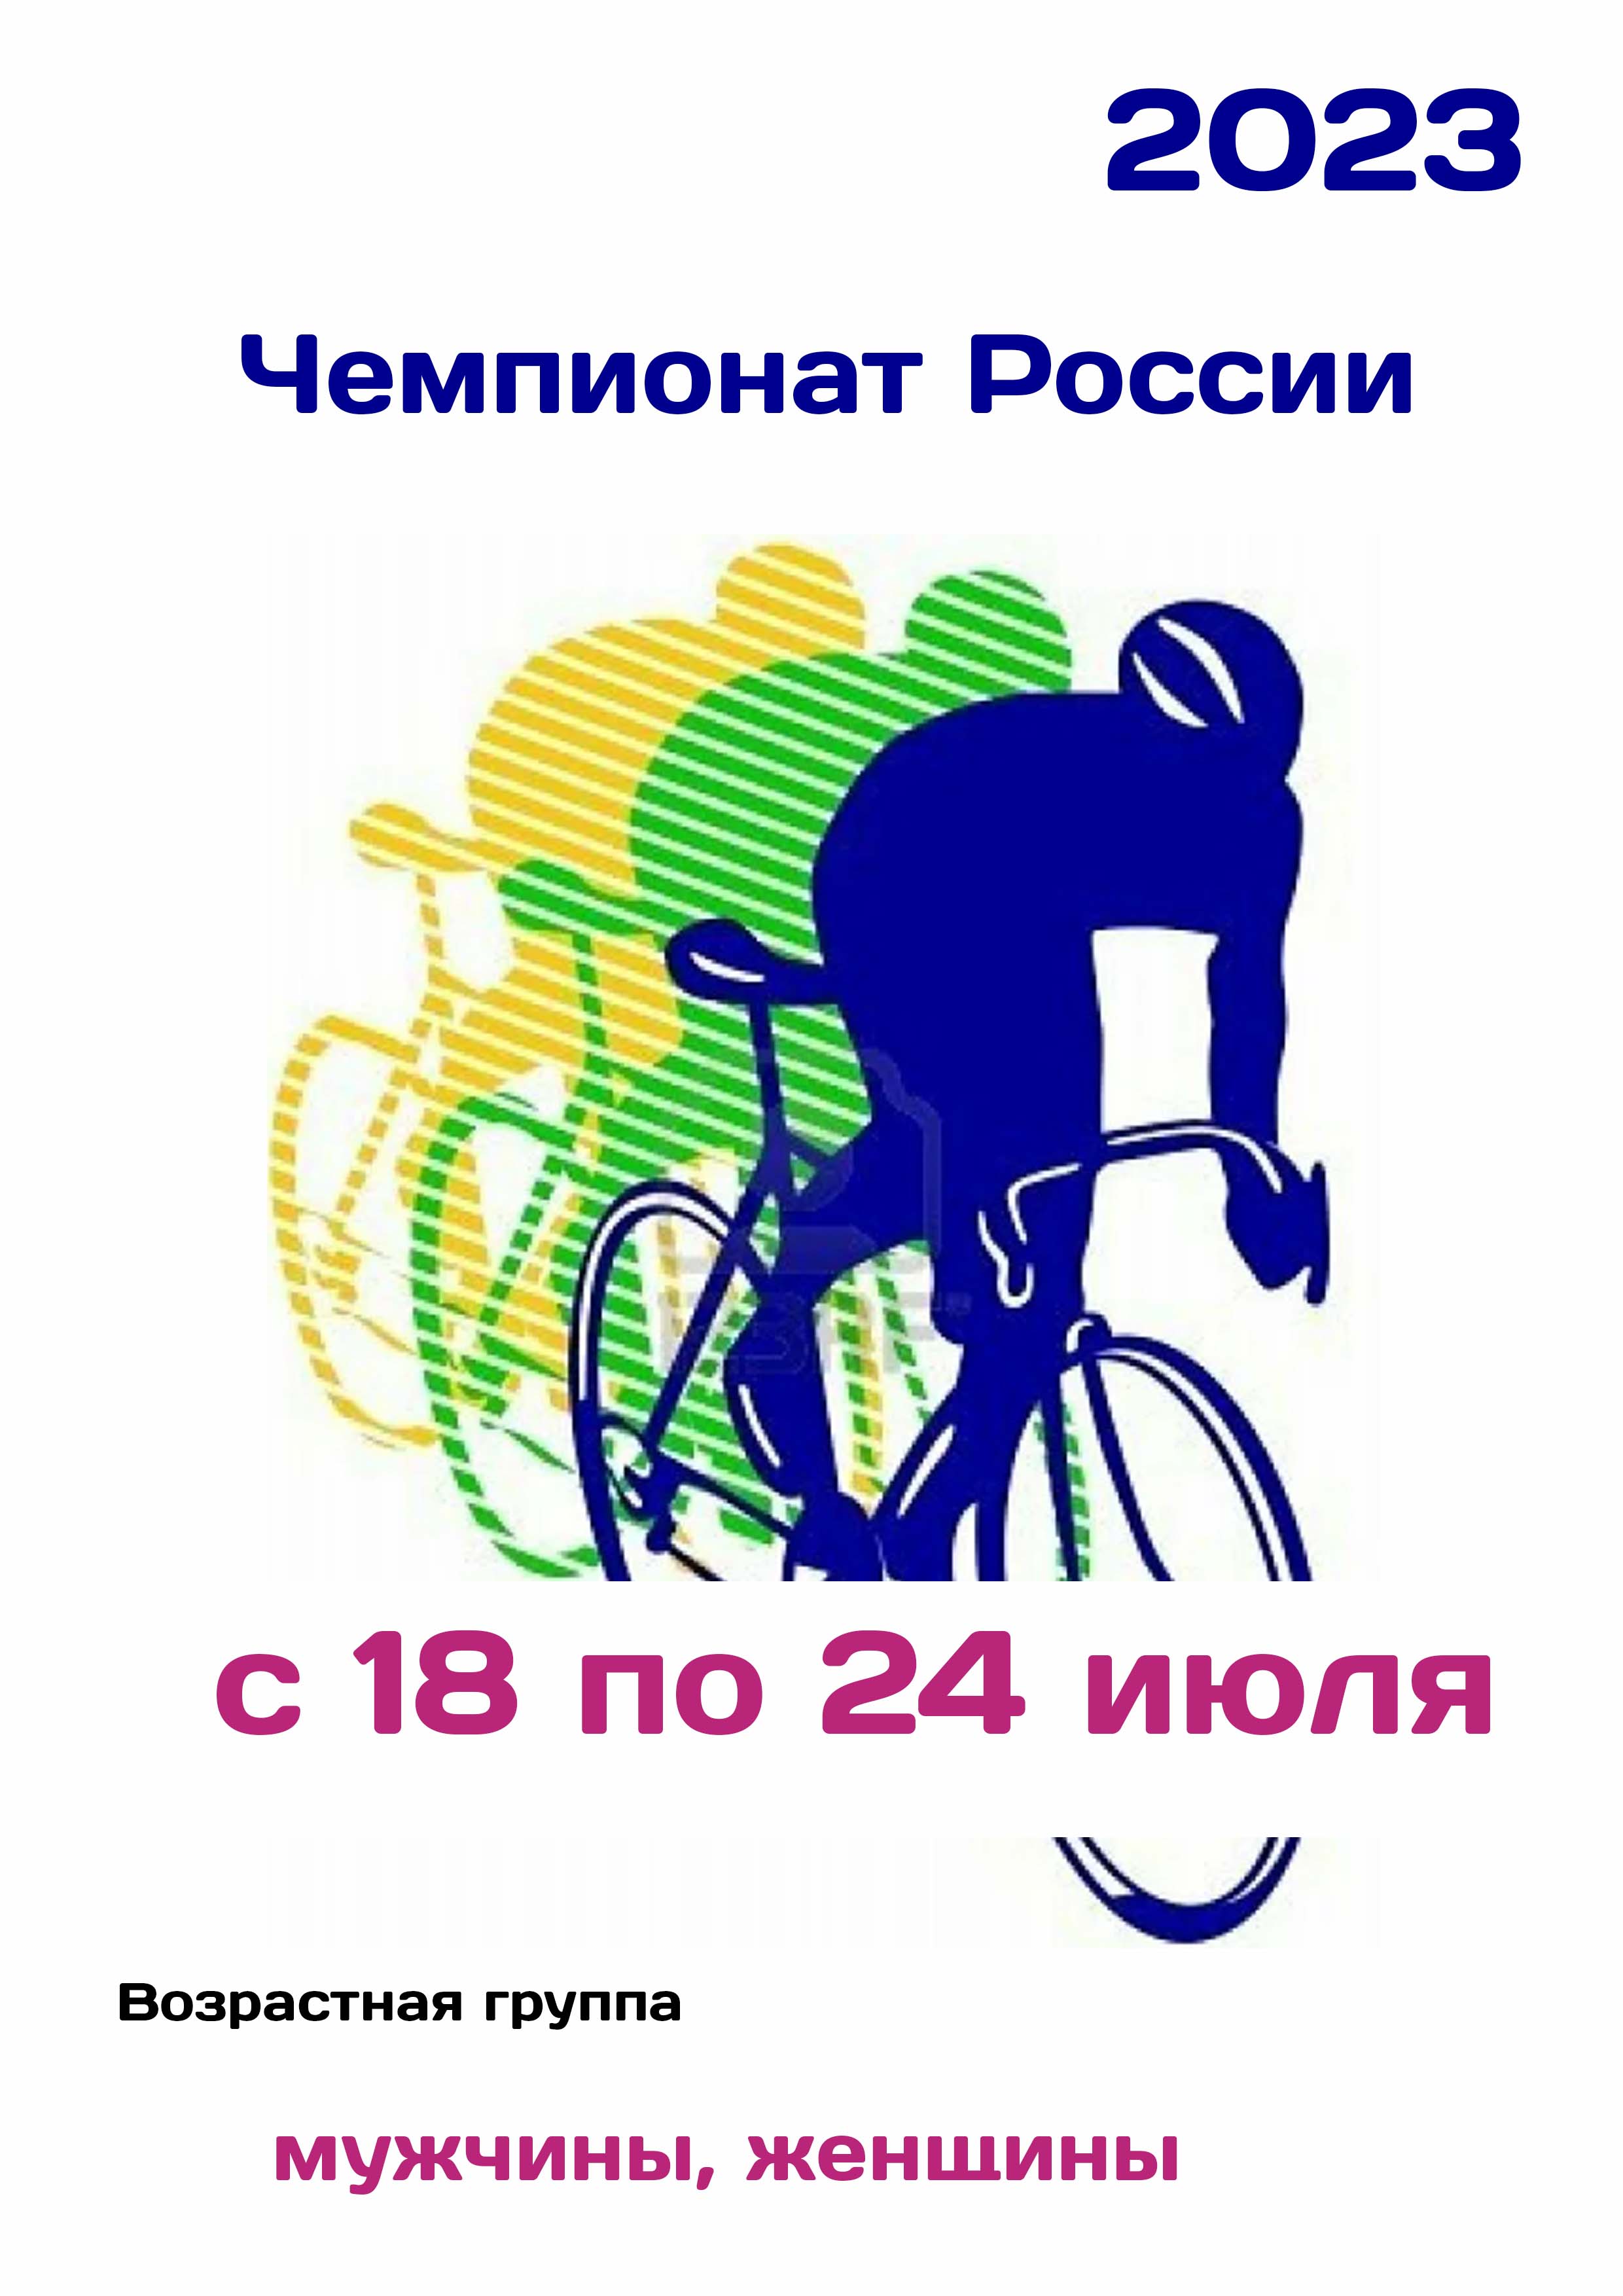 Чемпионат России по велоспорту 18  ஜூலை
 2023  ஆண்டு
 